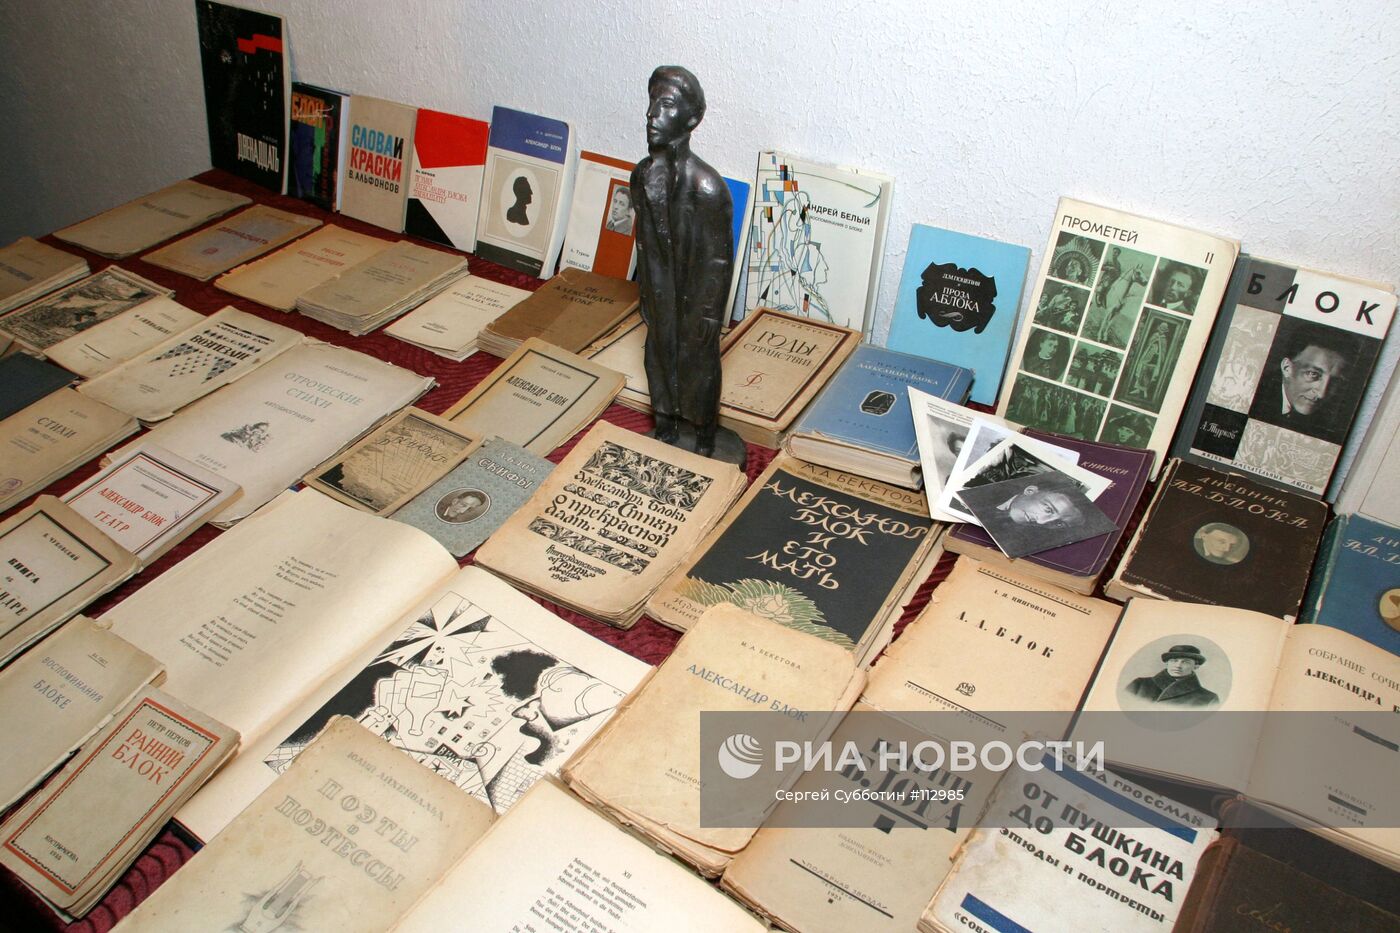 Коллекция прижизненные изданий А. Блок и книг о нем